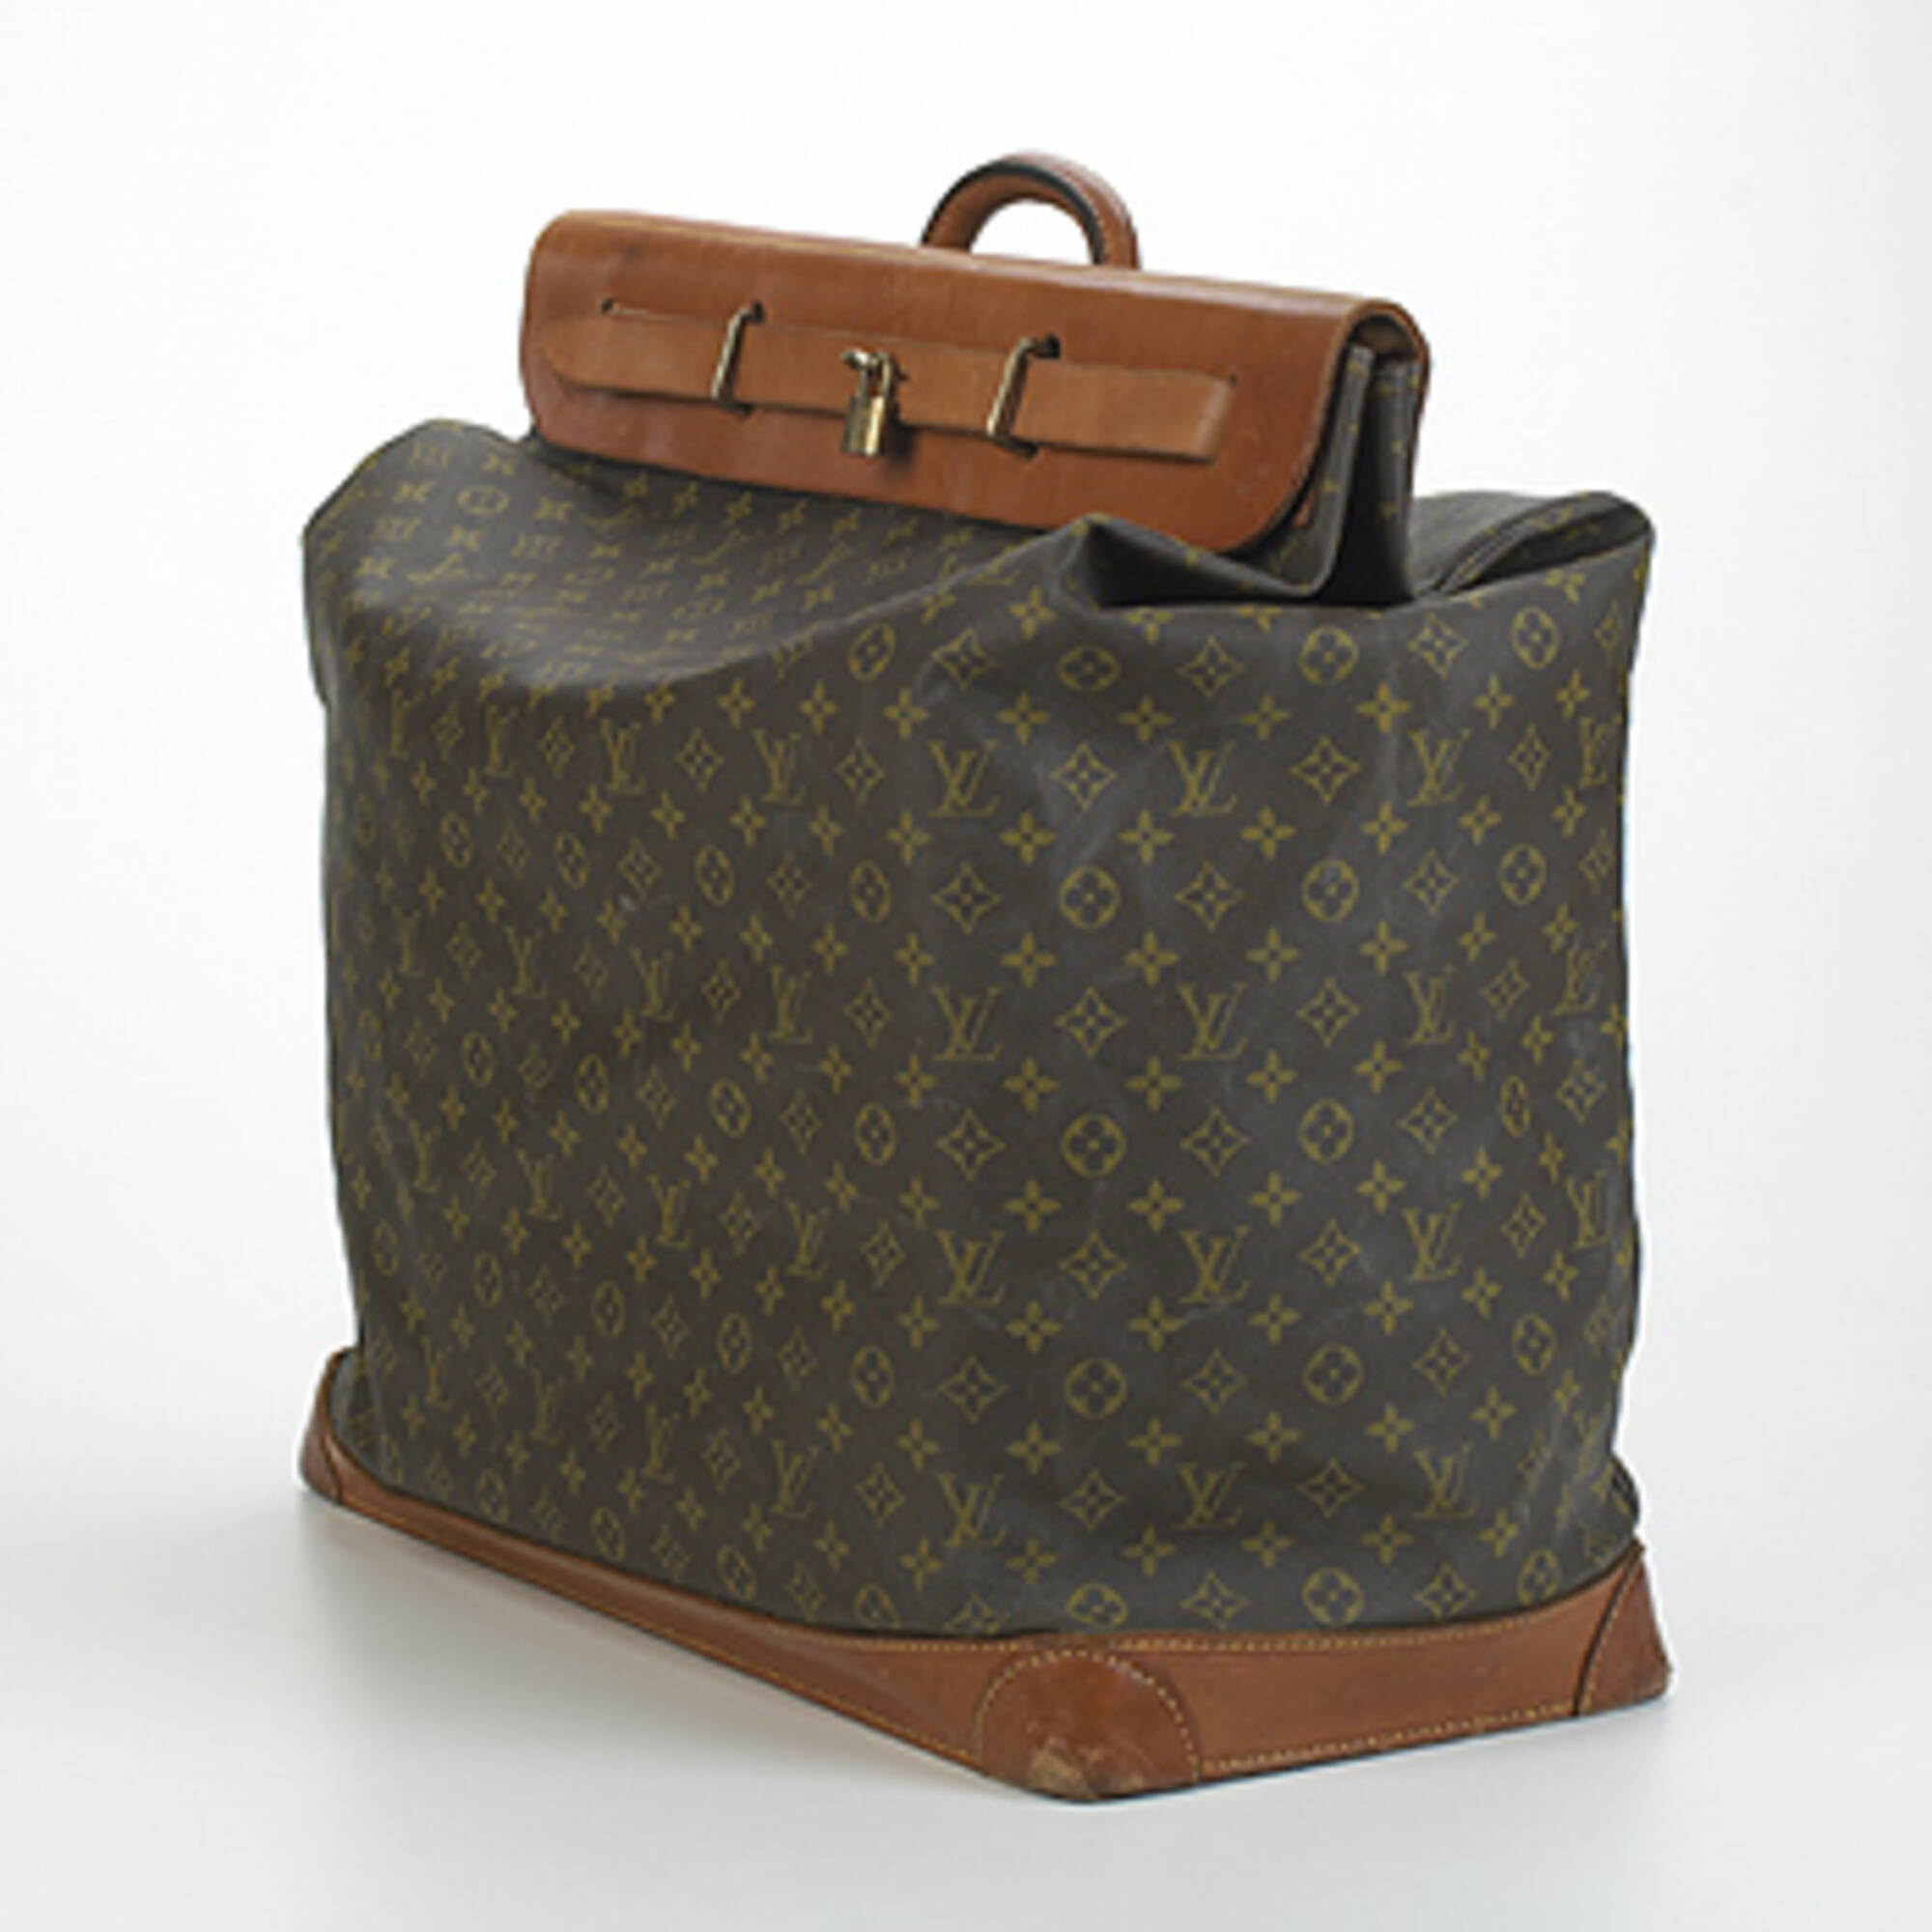 Sold at Auction: Large Vintage Suitcase, Louis Vuitton?